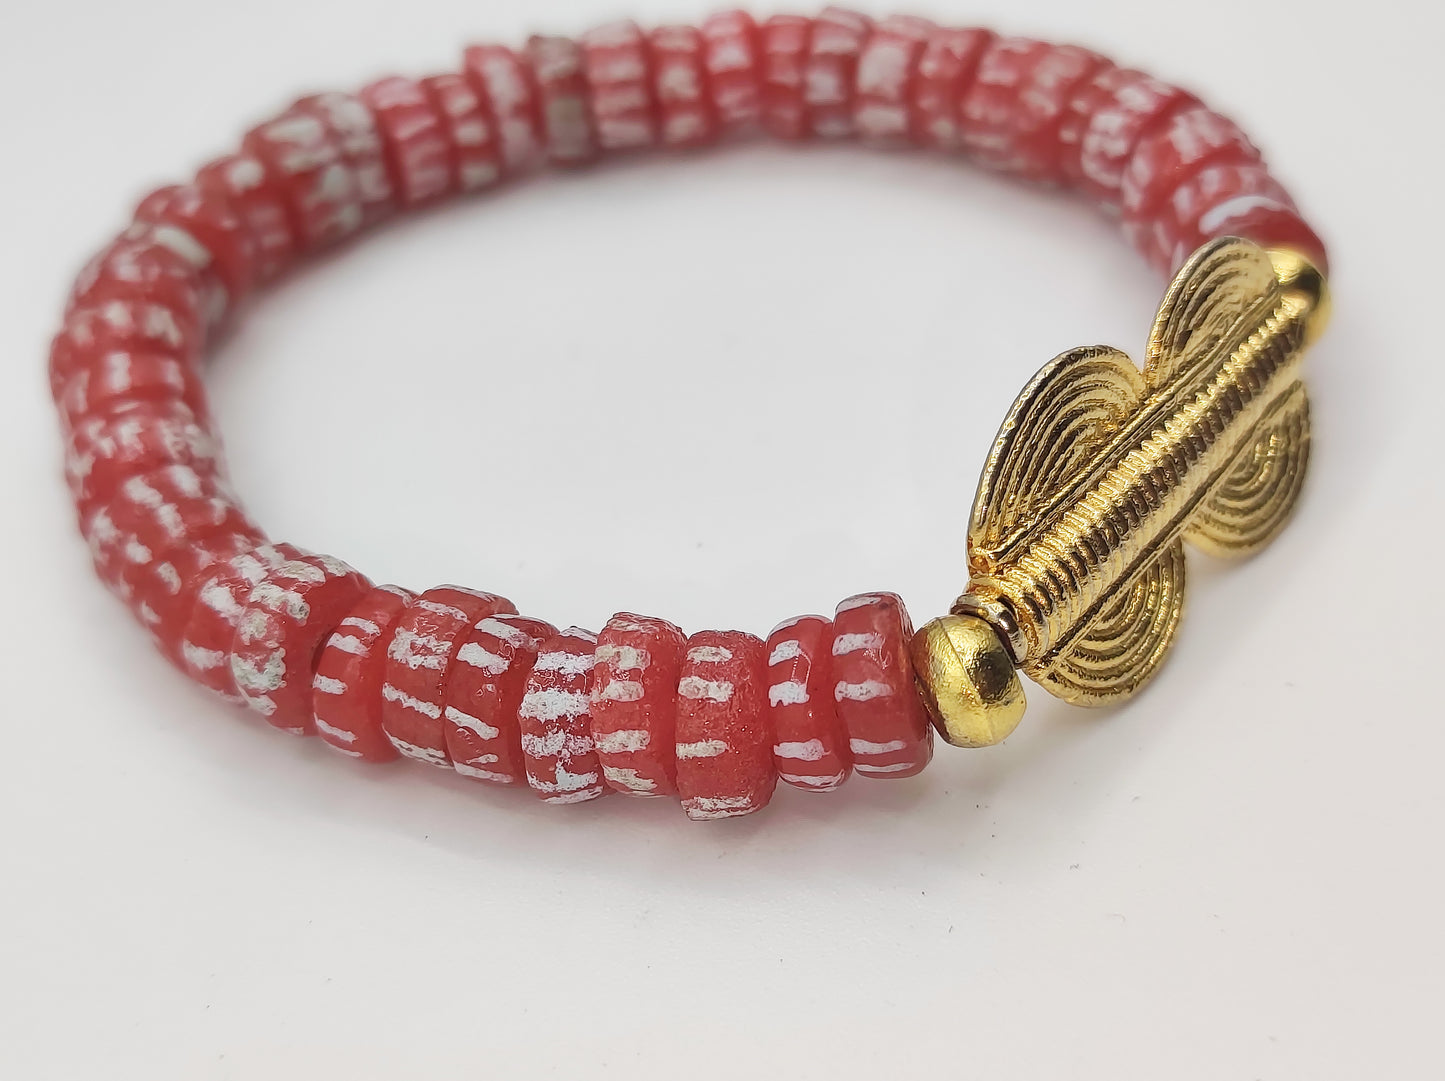 GNONLIVI rouge- spirale- perles africaines krobo